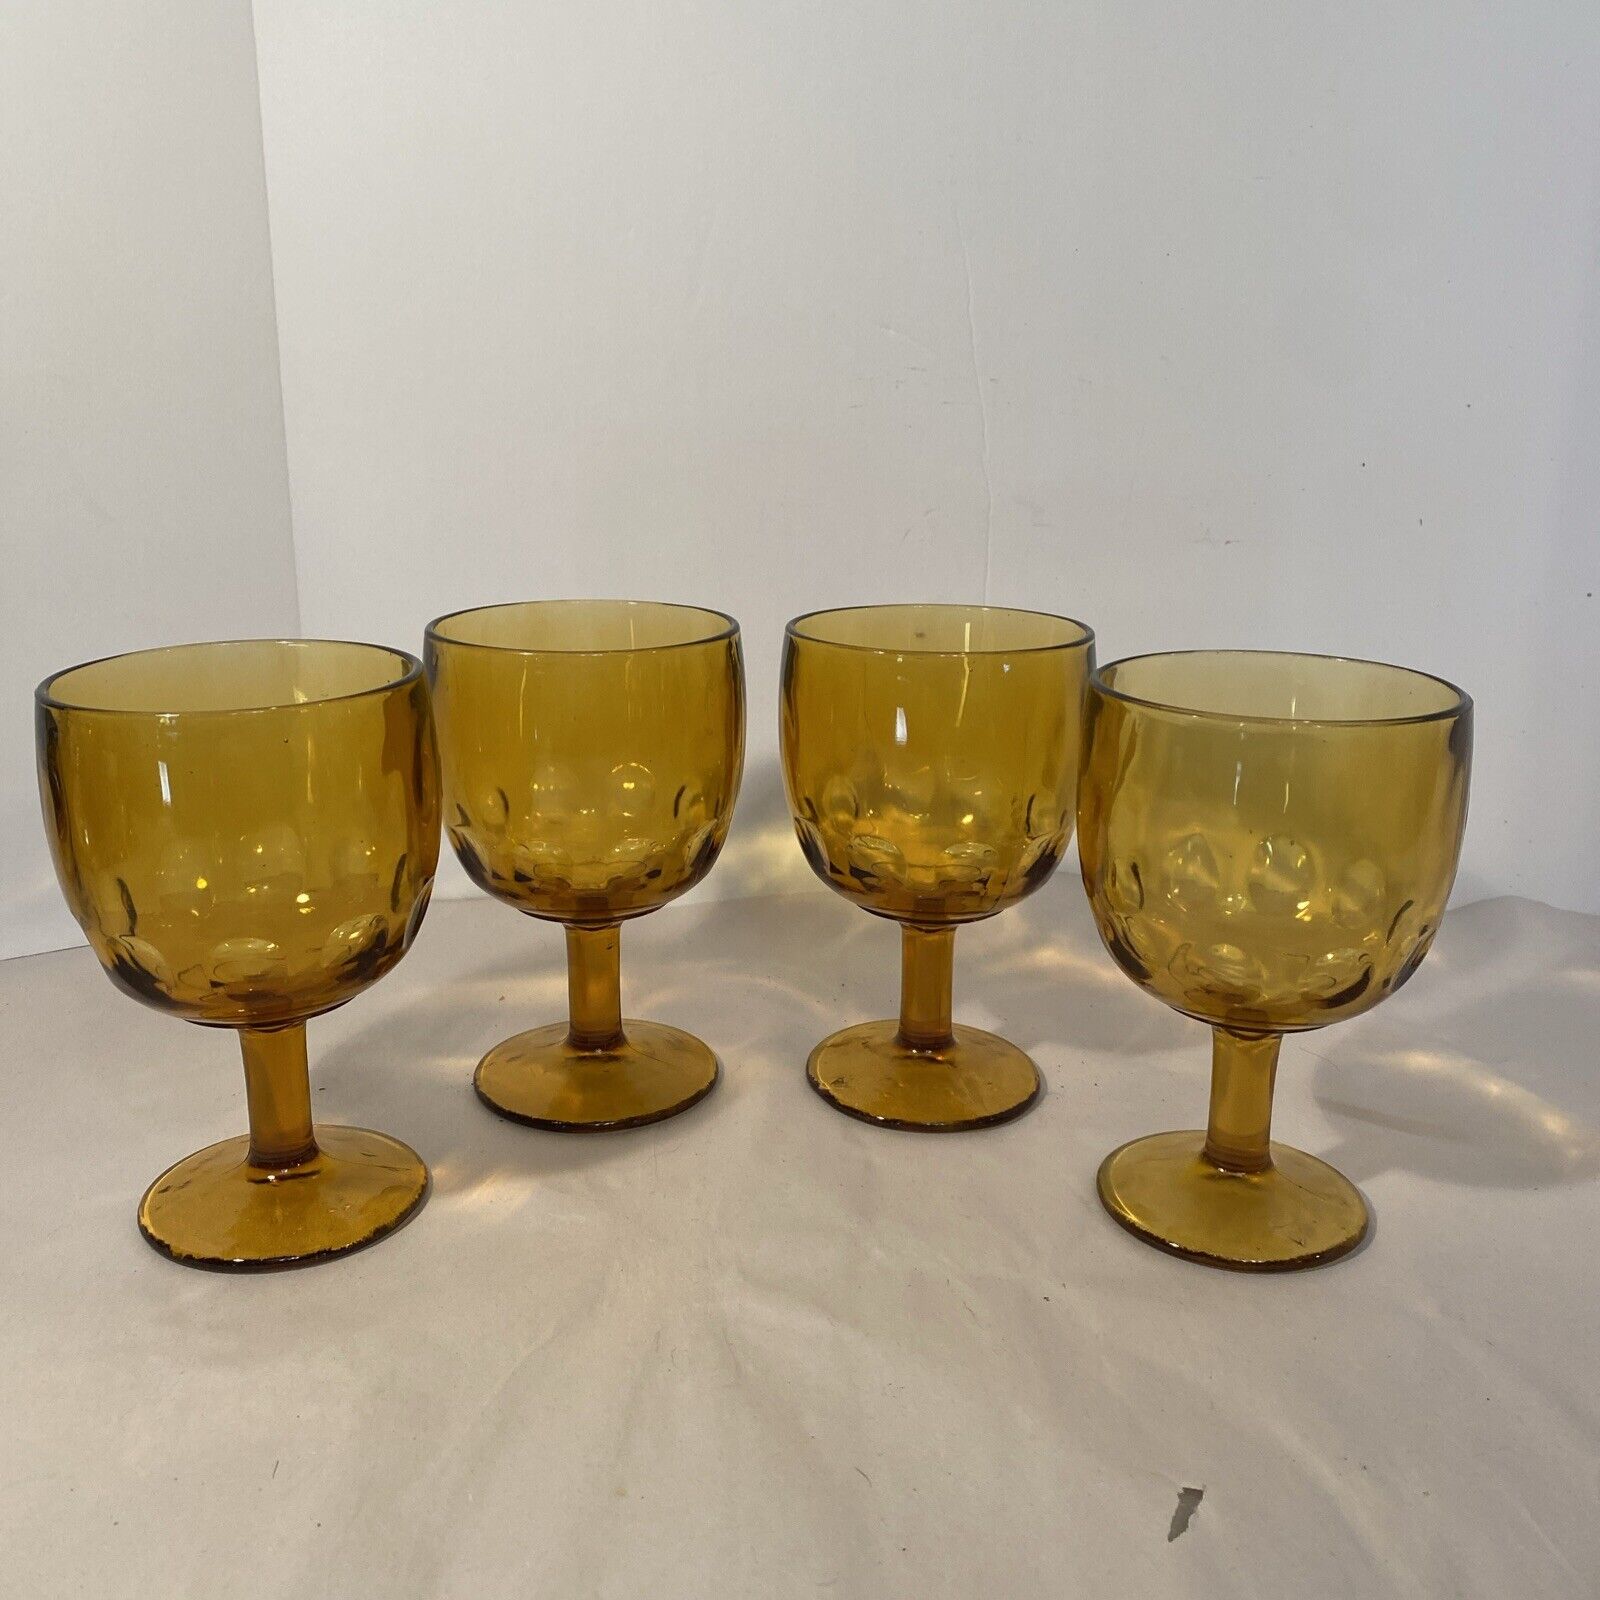 Set of 4 Vintage Bartlett Collins Amber Glass Beer Goblets Thumbprint Stemmed